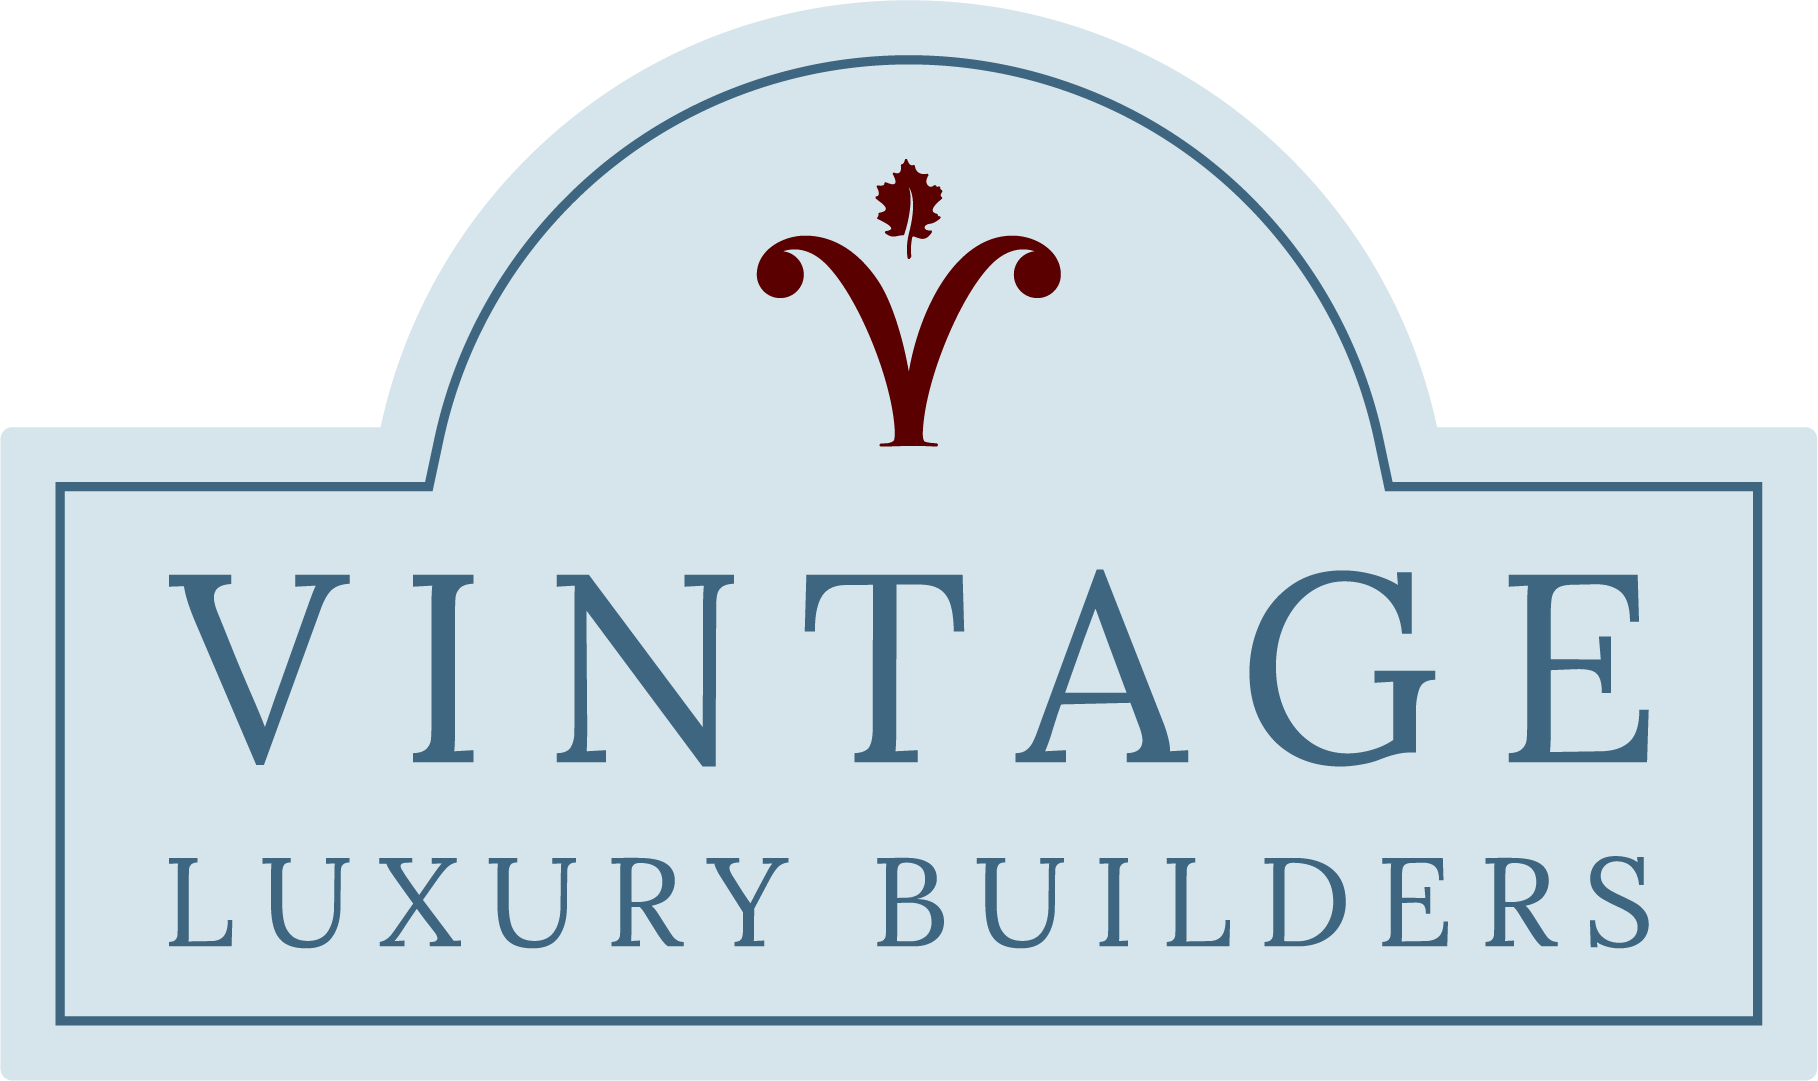 Vintage Luxury Builders